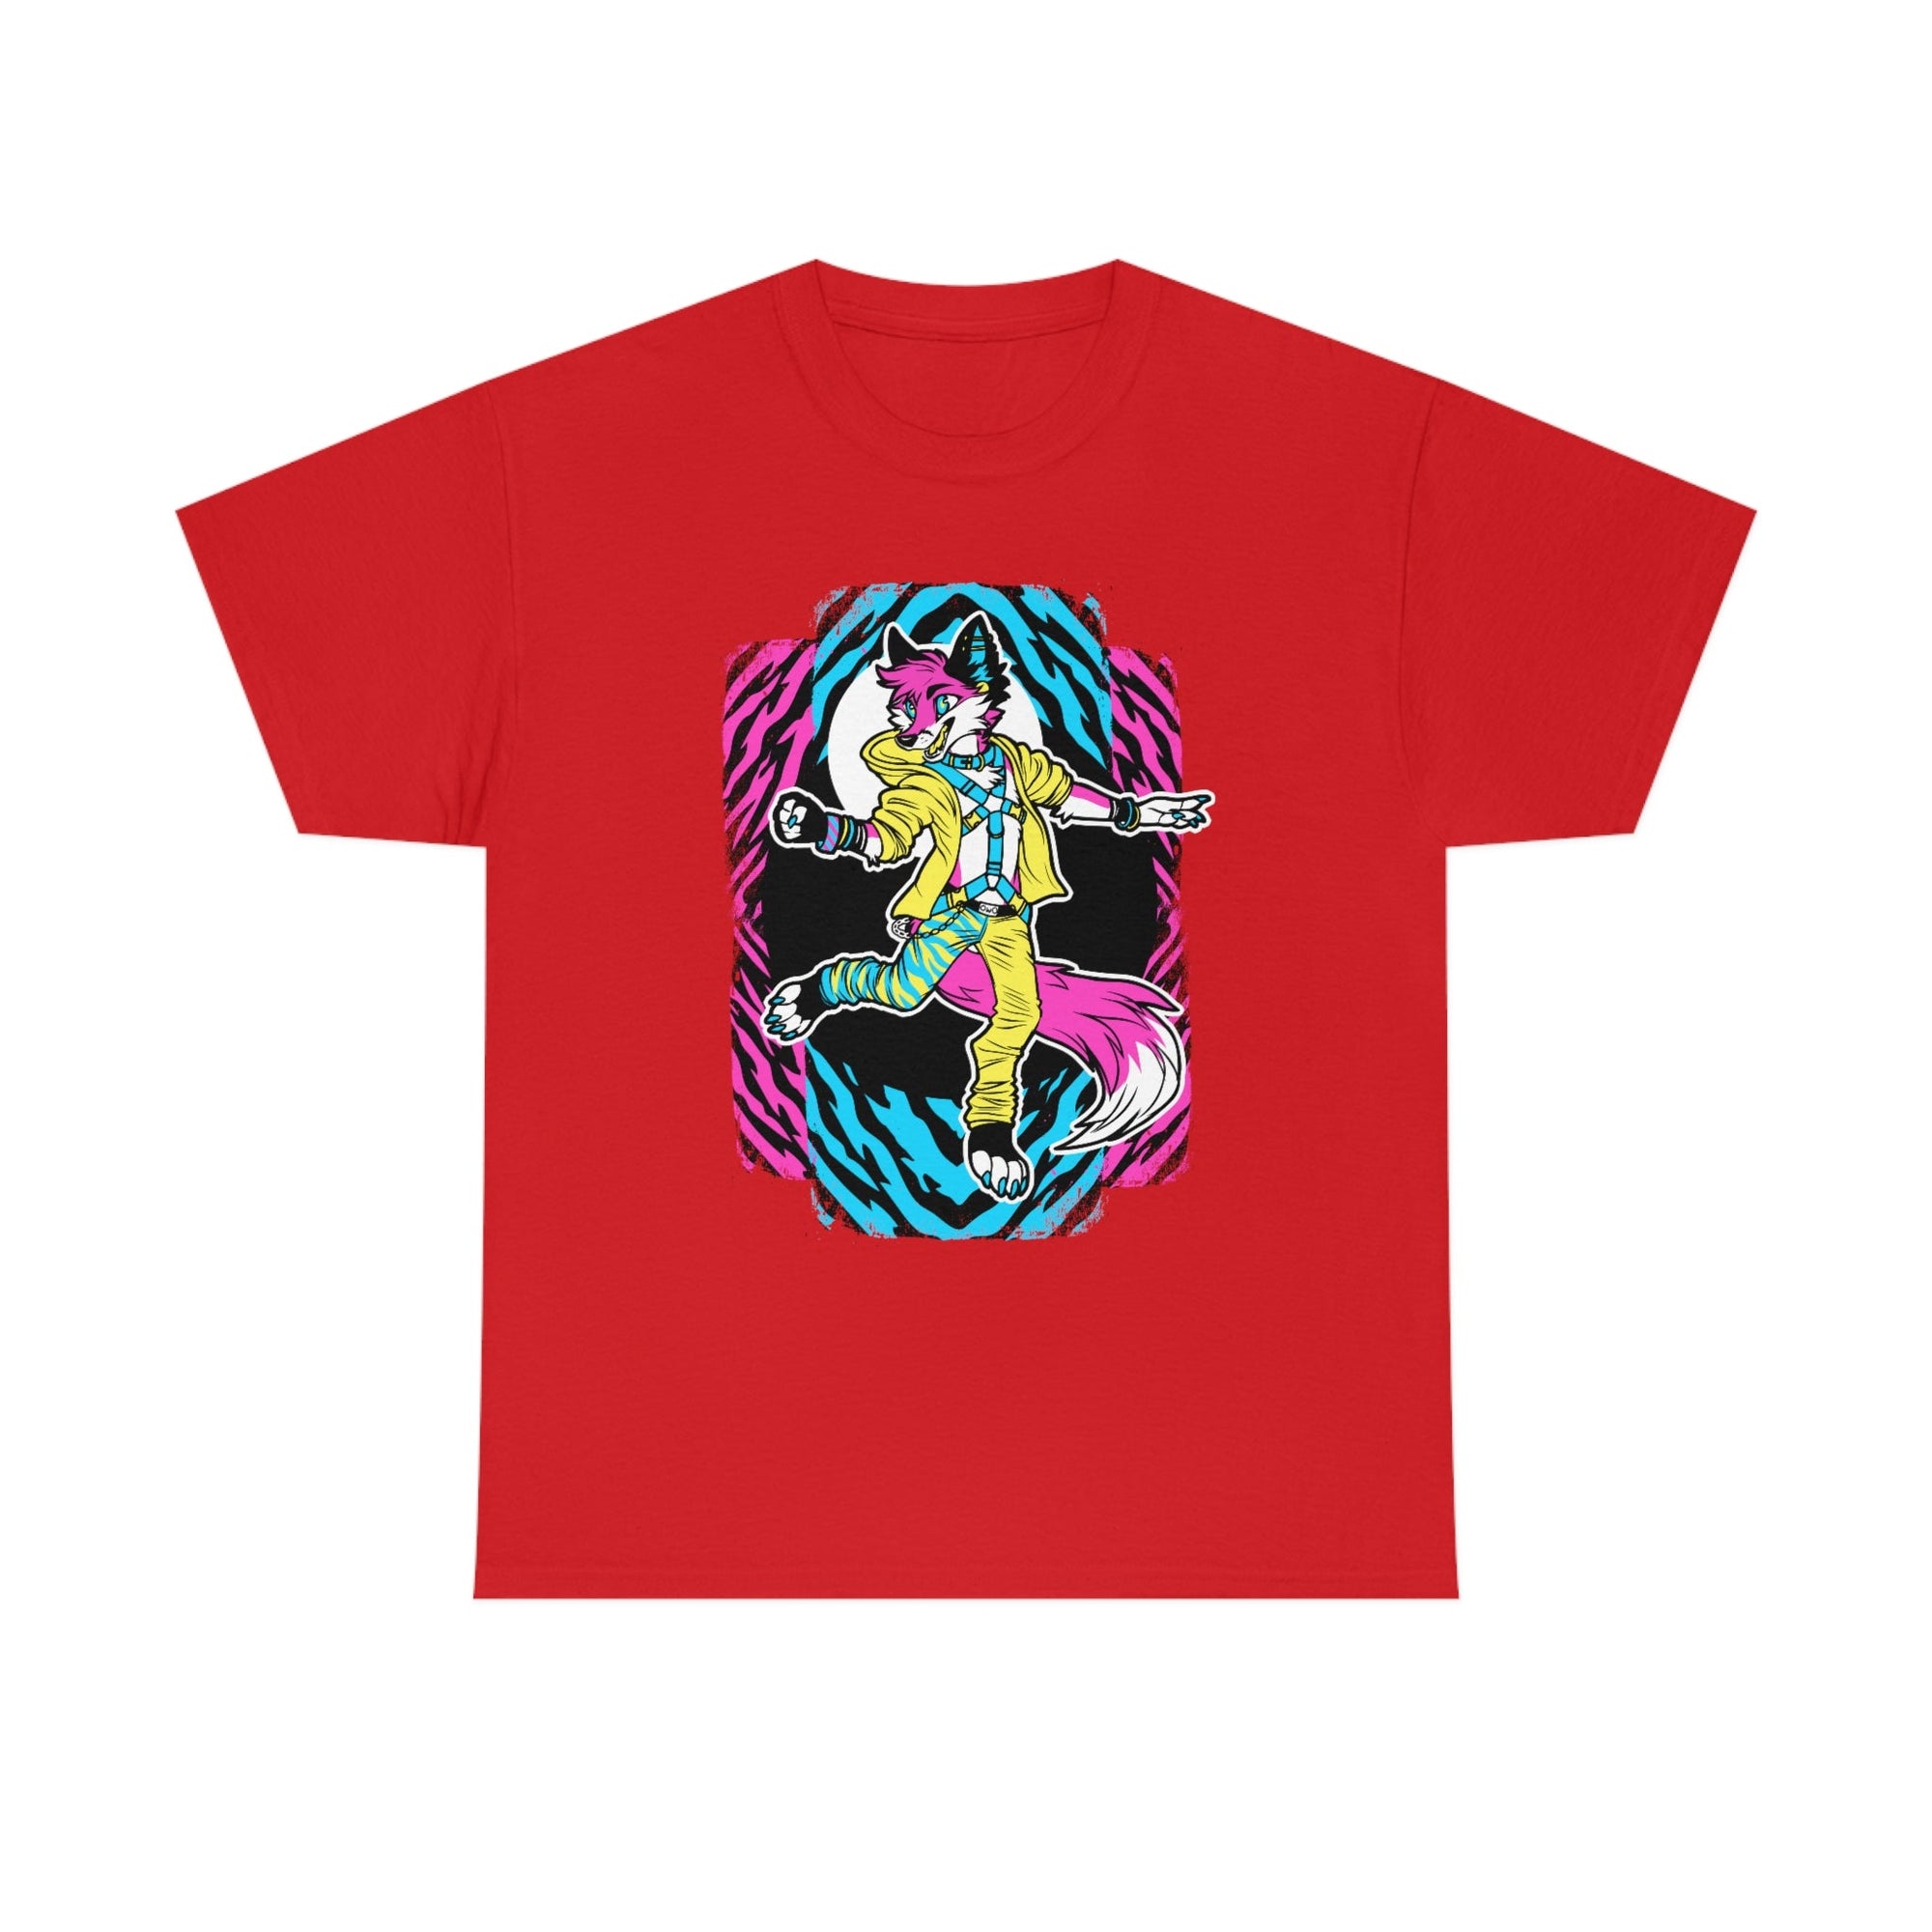 Rave Fox - T-Shirt T-Shirt Artworktee Red S 